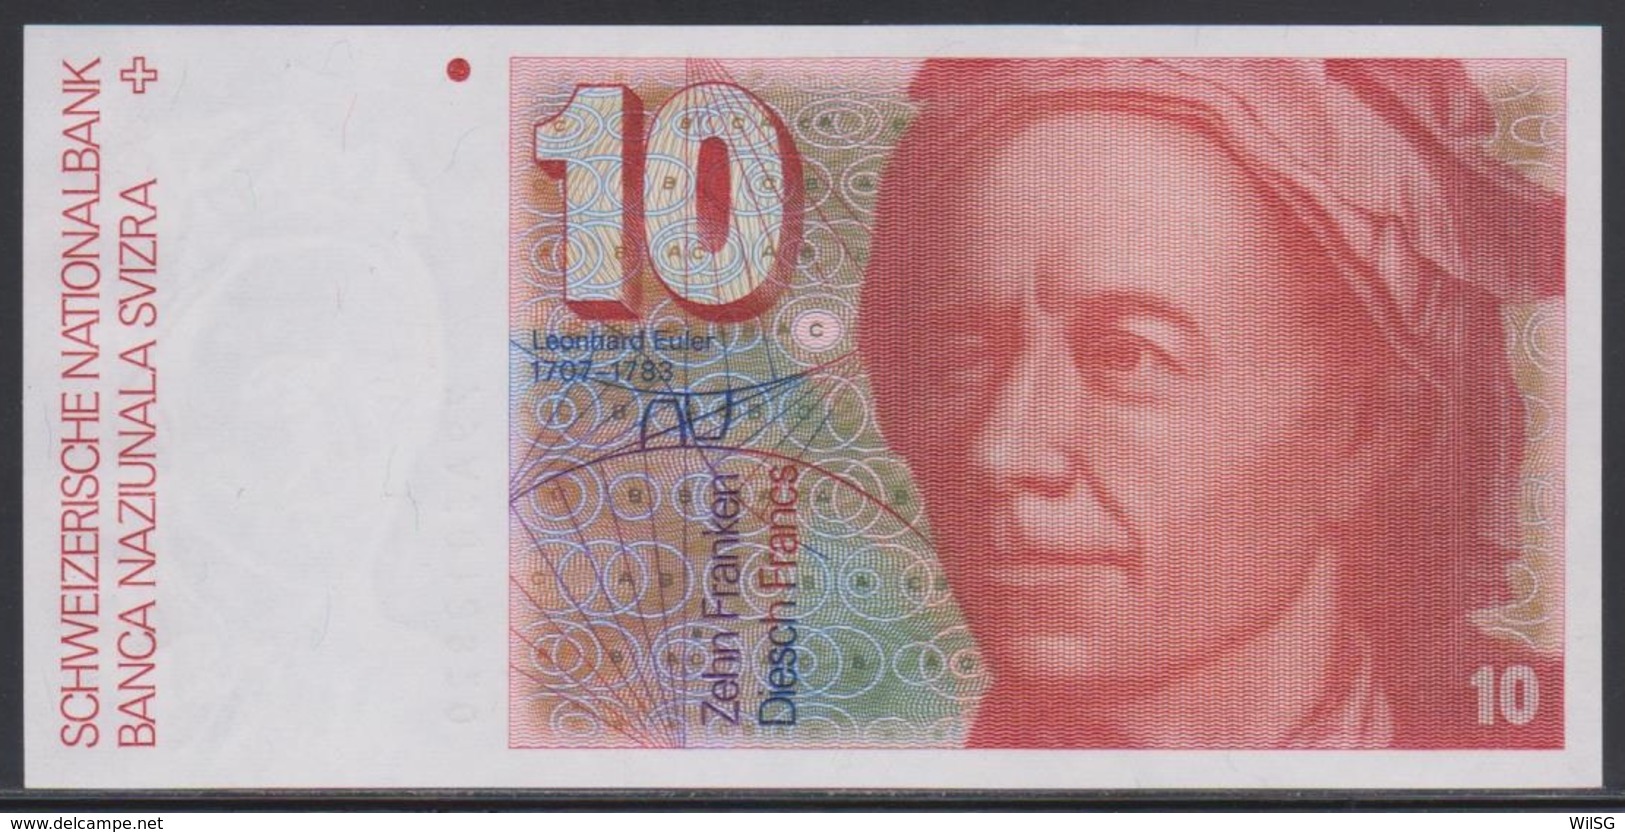 Switzerland 10 Franken (19)79 UNC - Suisse